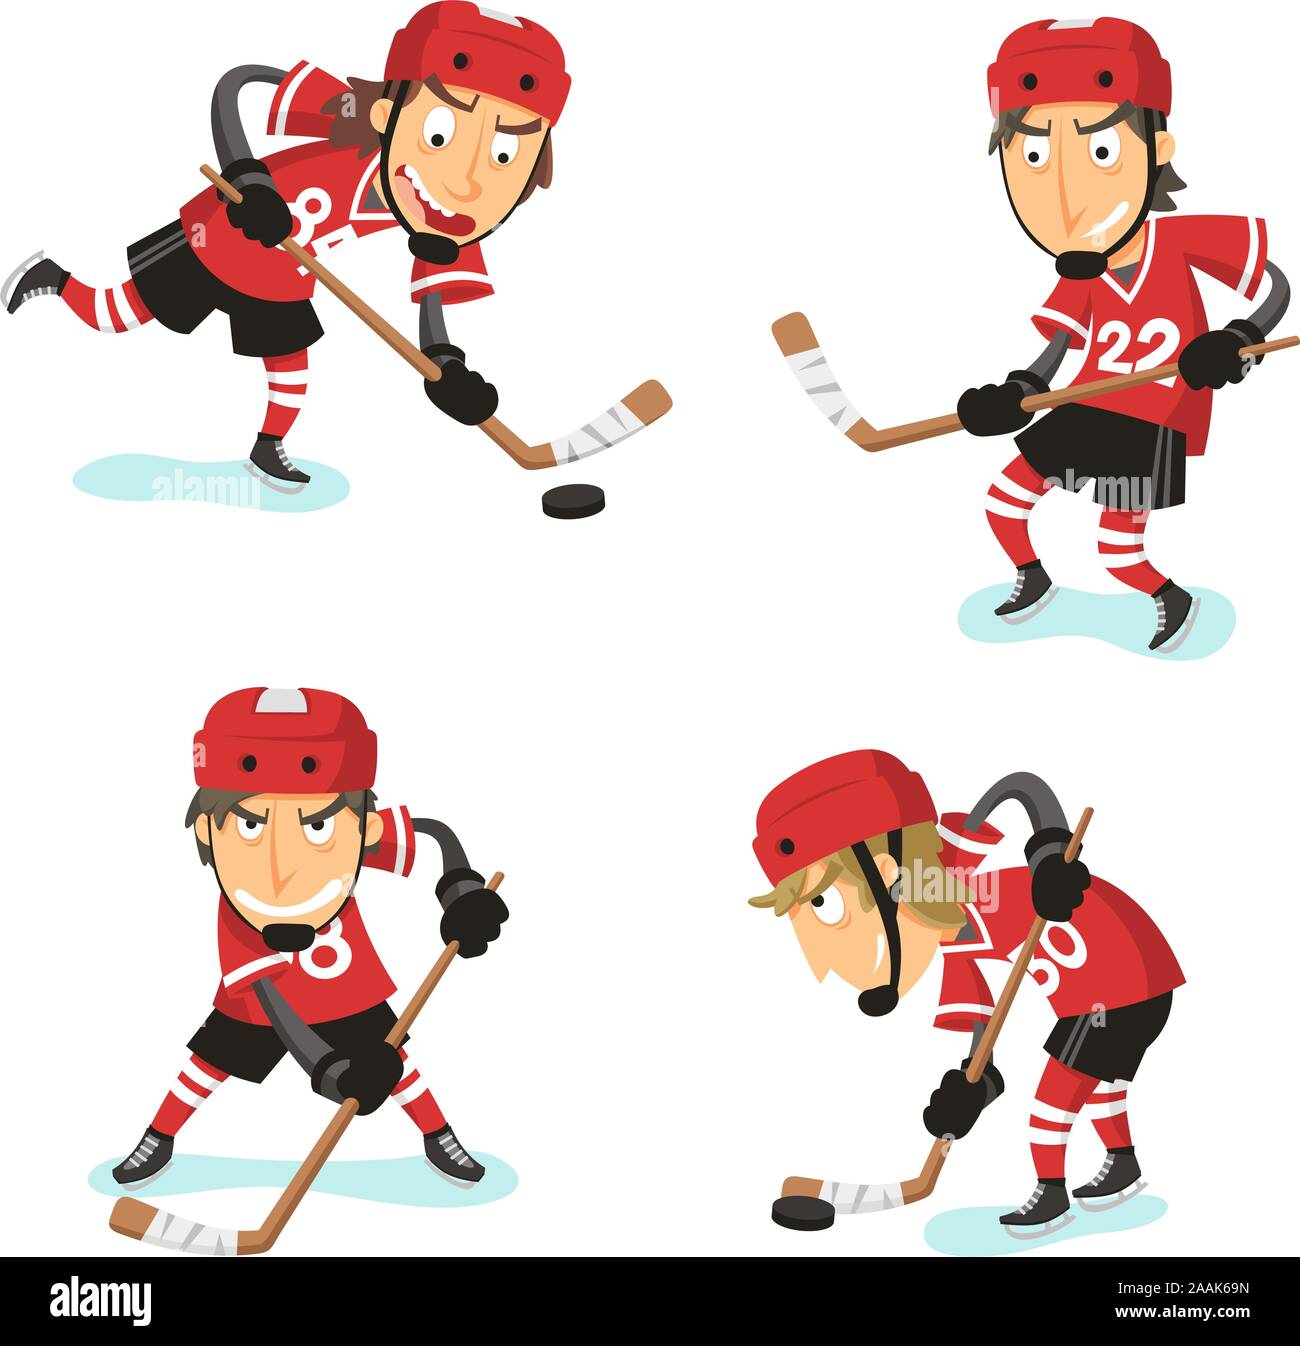 Le hockey sur glace Action définie, avec le joueur de hockey dans quatre positions différentes. Vector illustration cartoon. Illustration de Vecteur